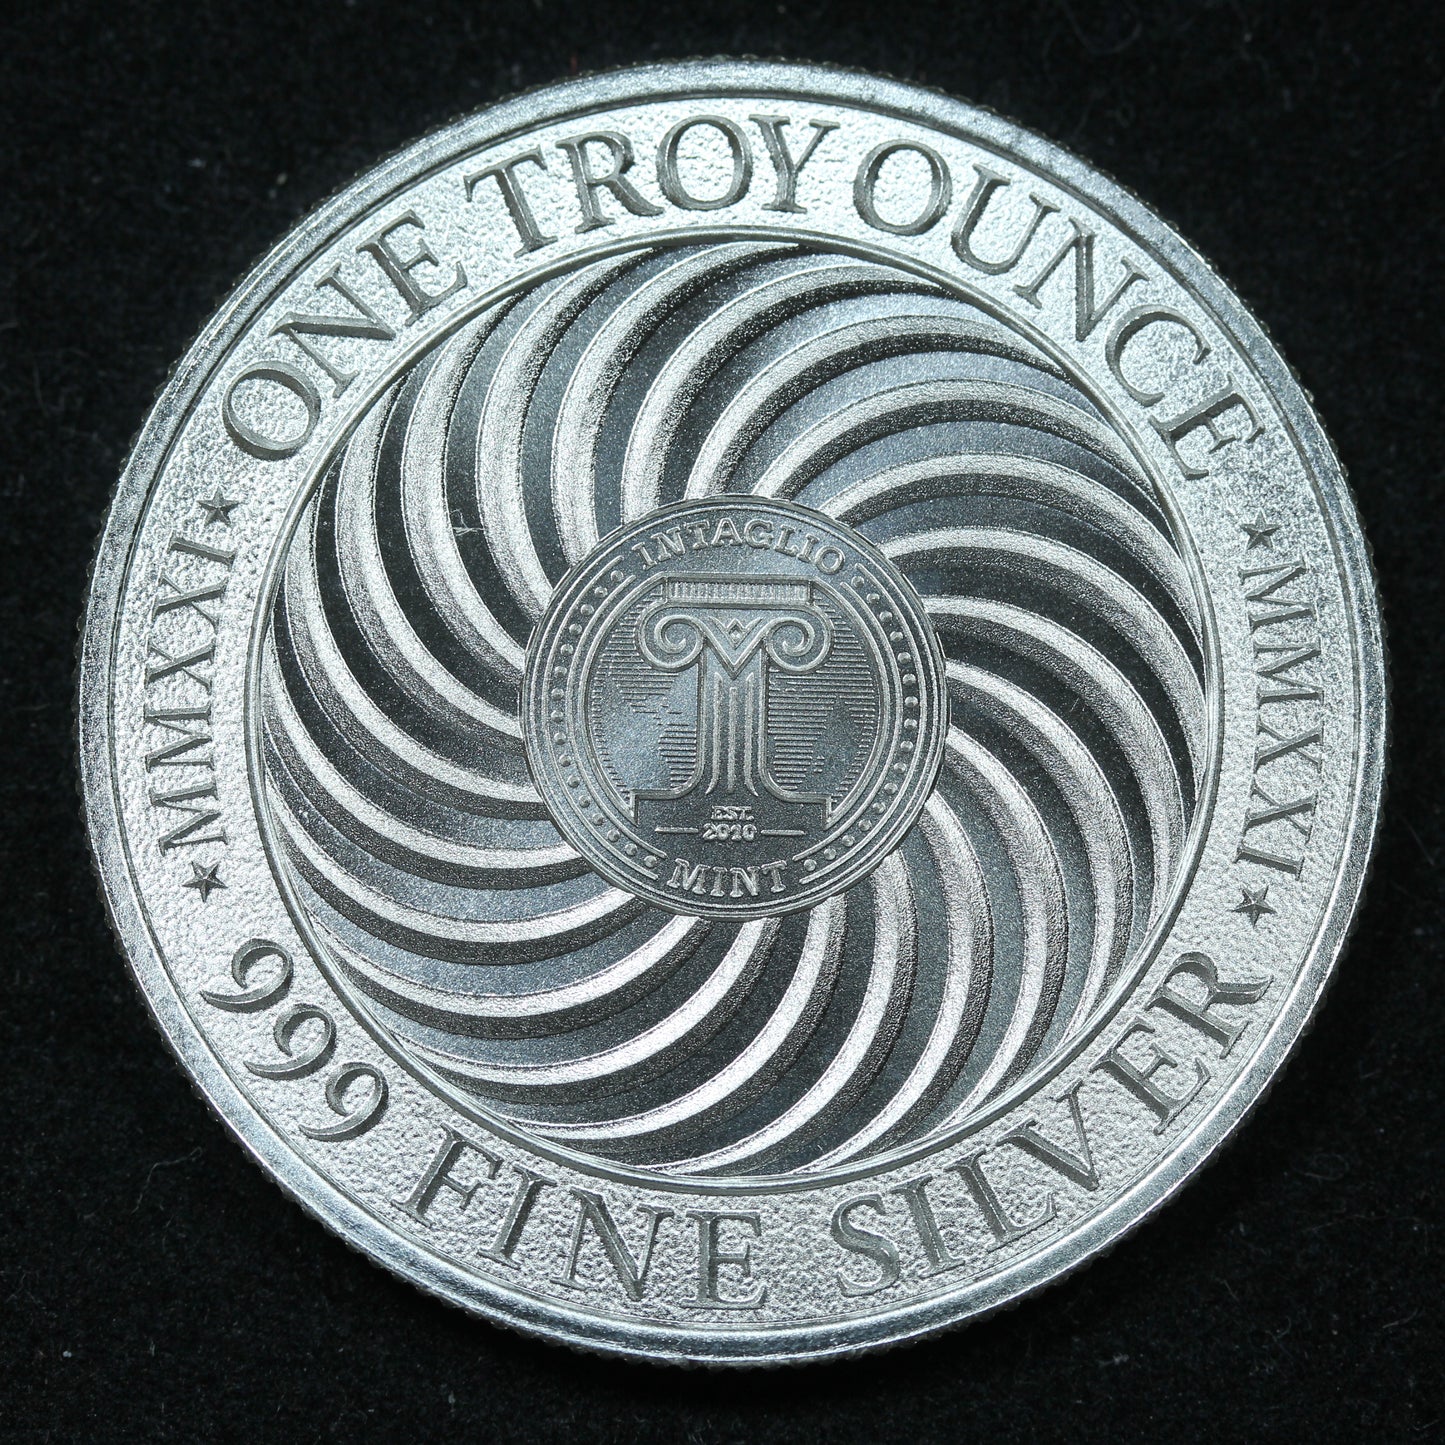 1 oz .999 Fine Silver Round - Intaglio Mint Loch Ness Monster In Capsule